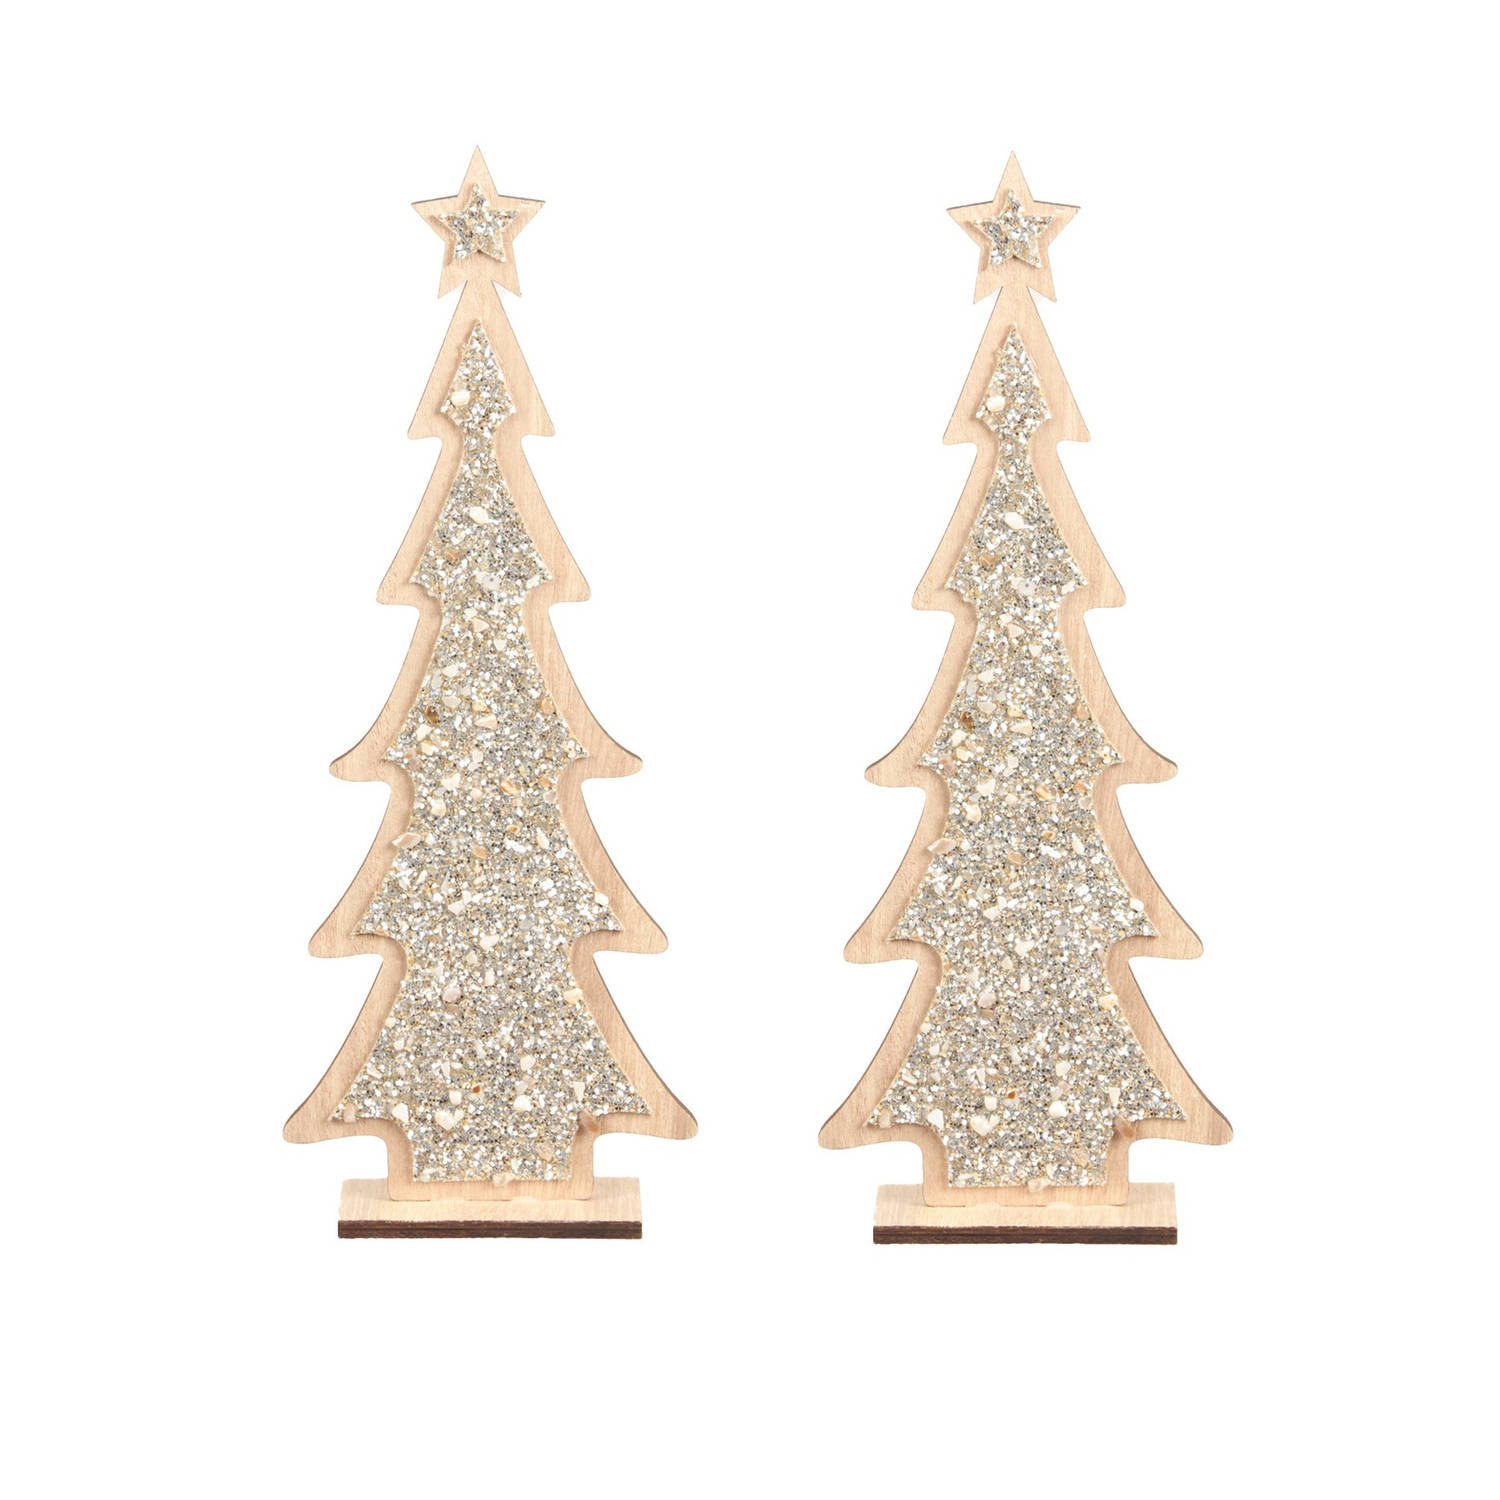 2x Stuks Kerstdecoratie Houten Kerstboom Glitter Zilver 35,5 Cm Decoratie Kerstbomen Kunstkerstboom